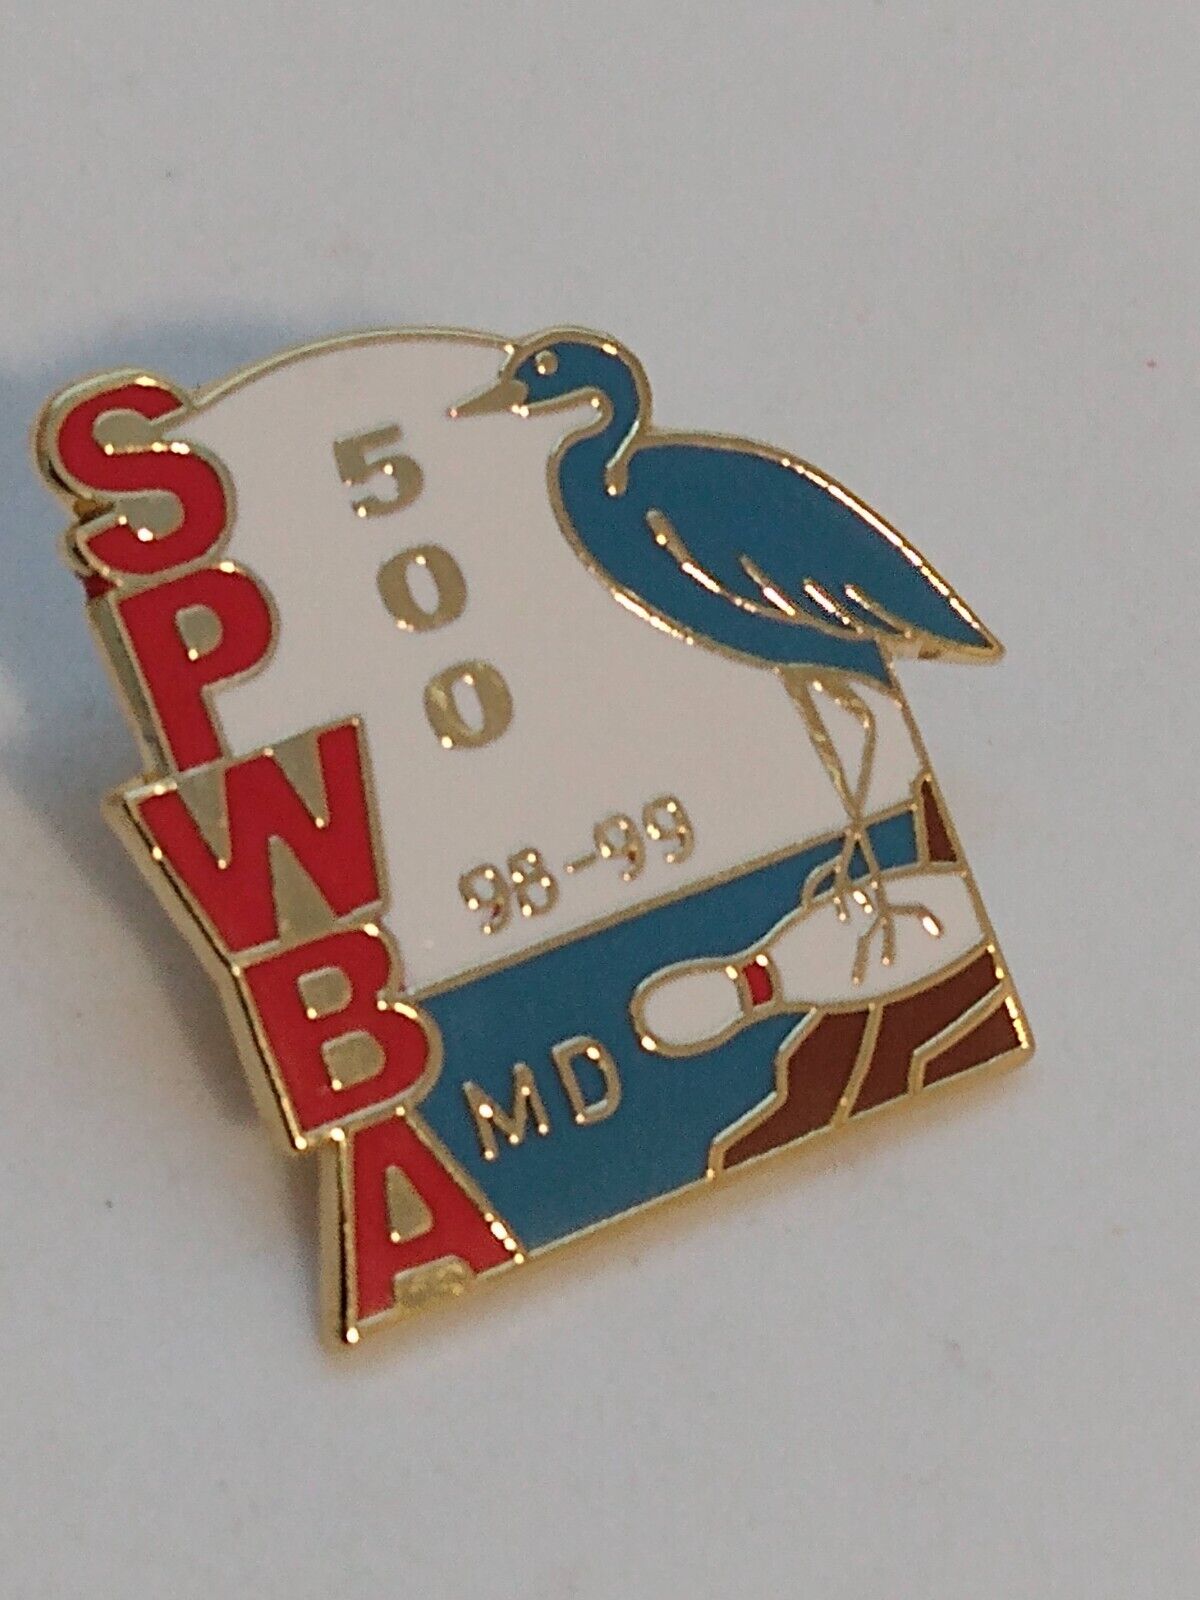 SPWBA 500 MD 98-99 Lapel Pin